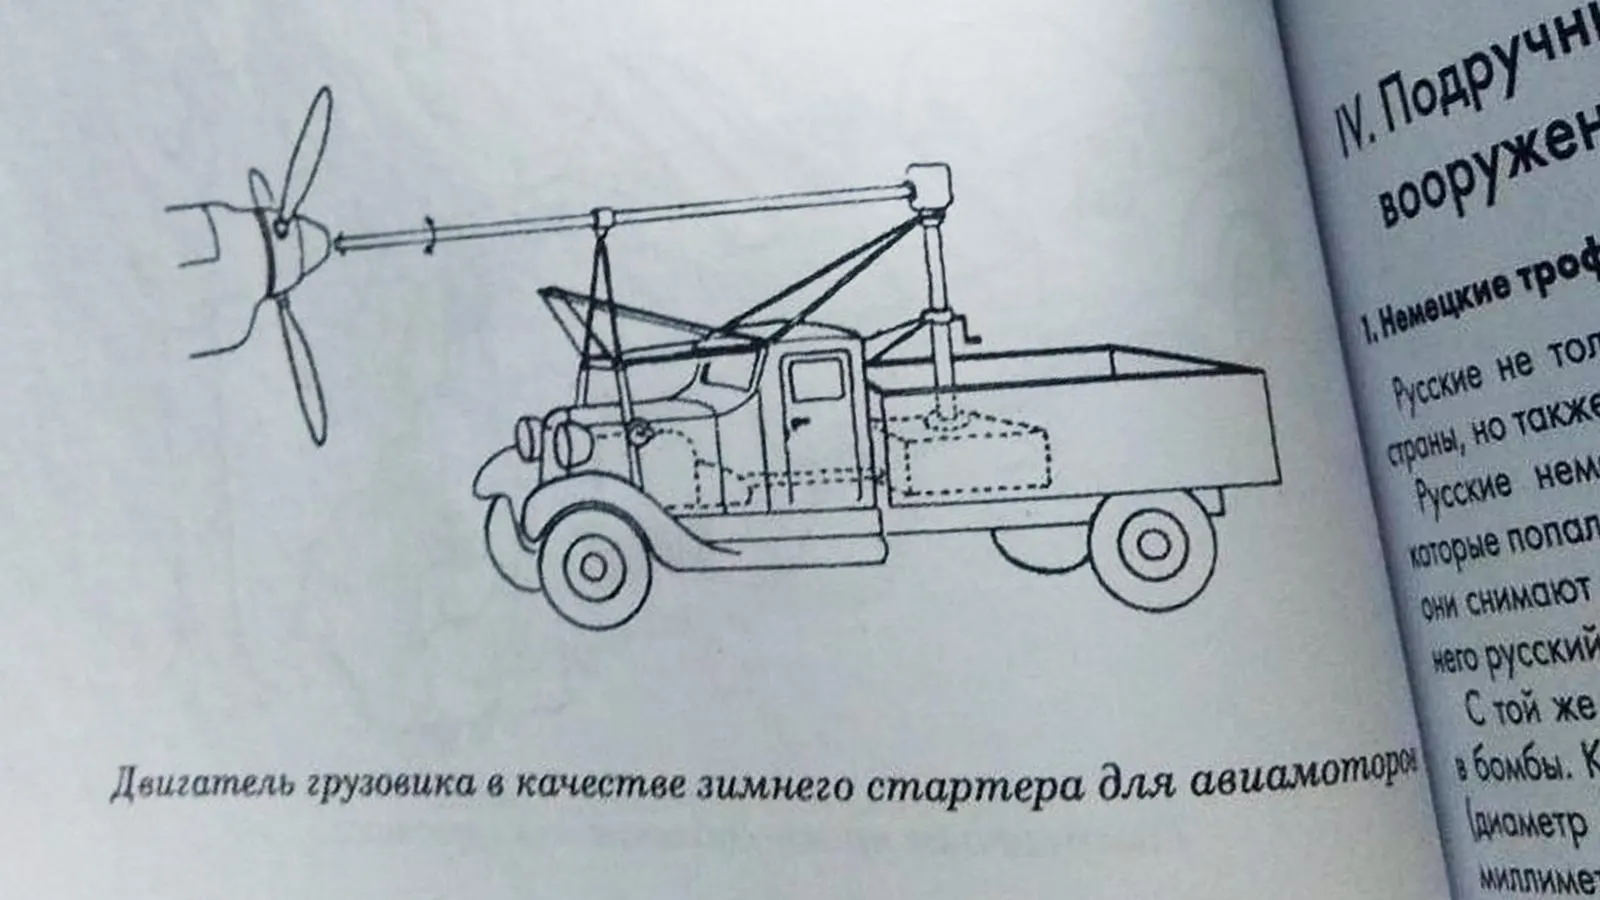 Иллюстрация из брошюры «Русские подручные средство», перевод и издание Российского военно-исторического общества 2021 года